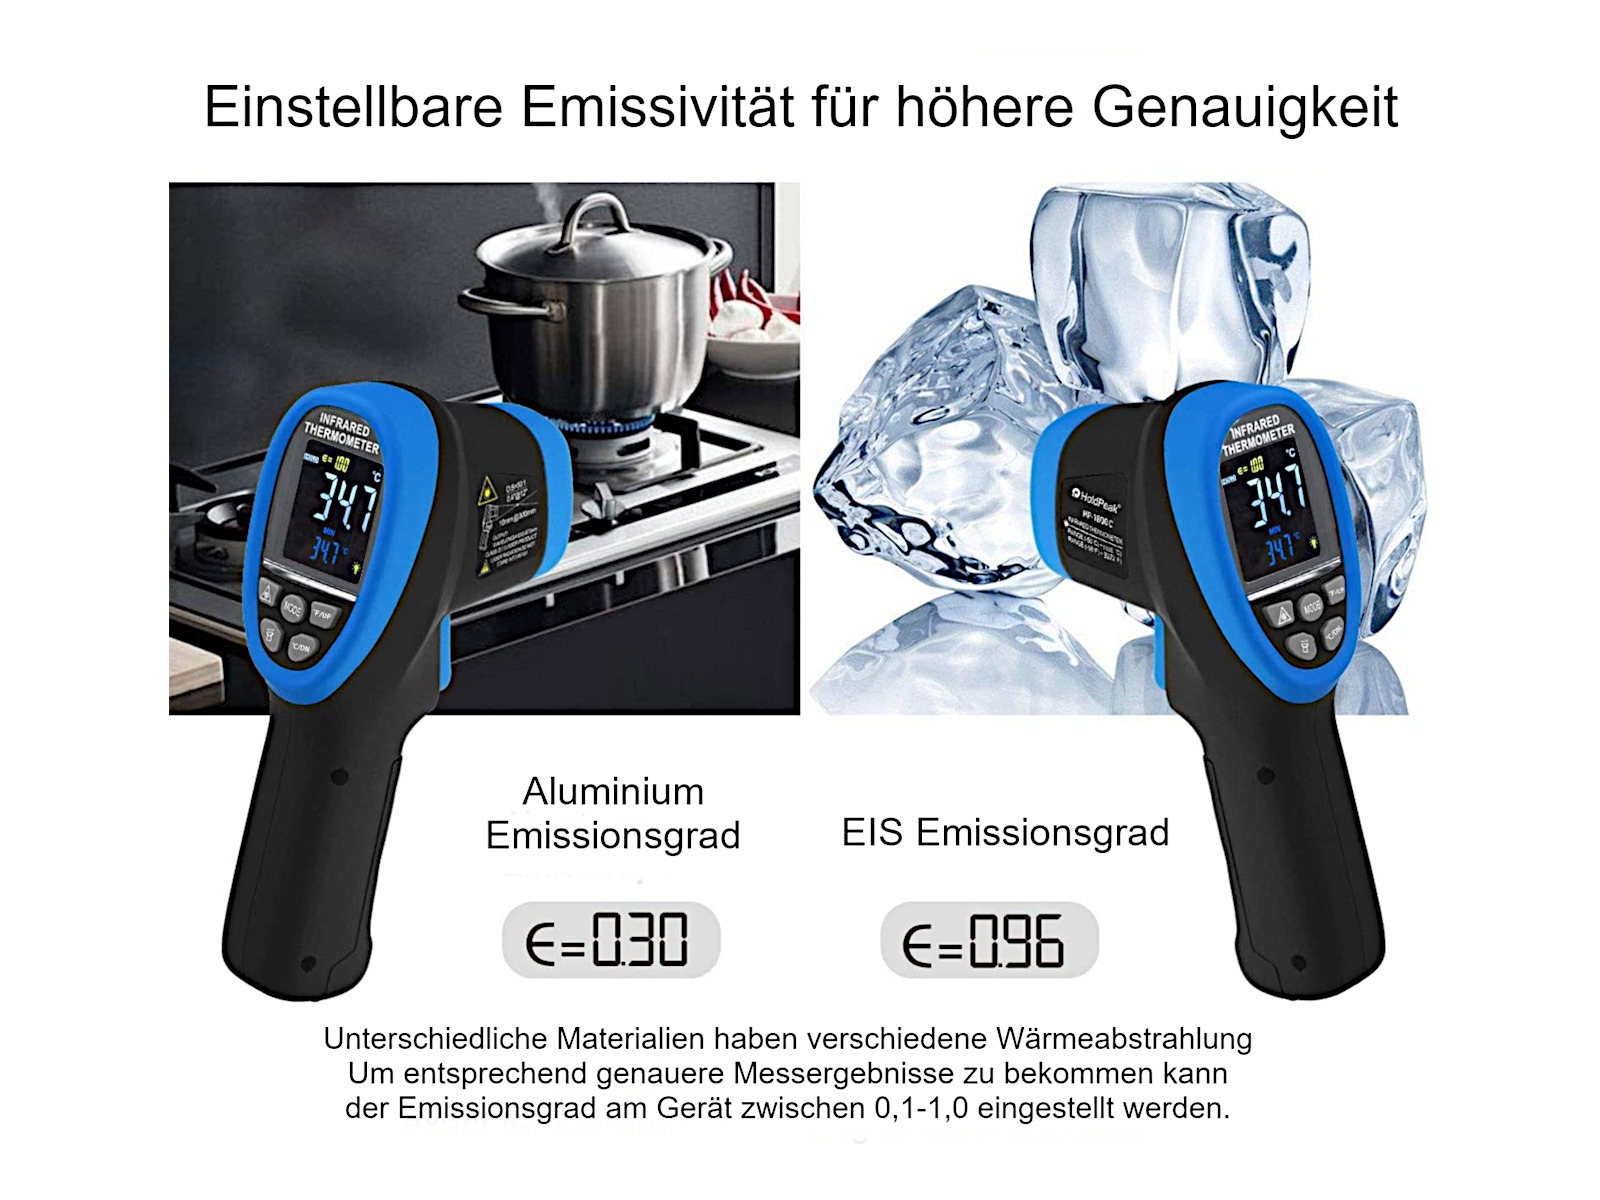 https://www.komerci.de/shop/images/produktbilder/1102_infrarotthermometer_hp-1800c_5.jpg